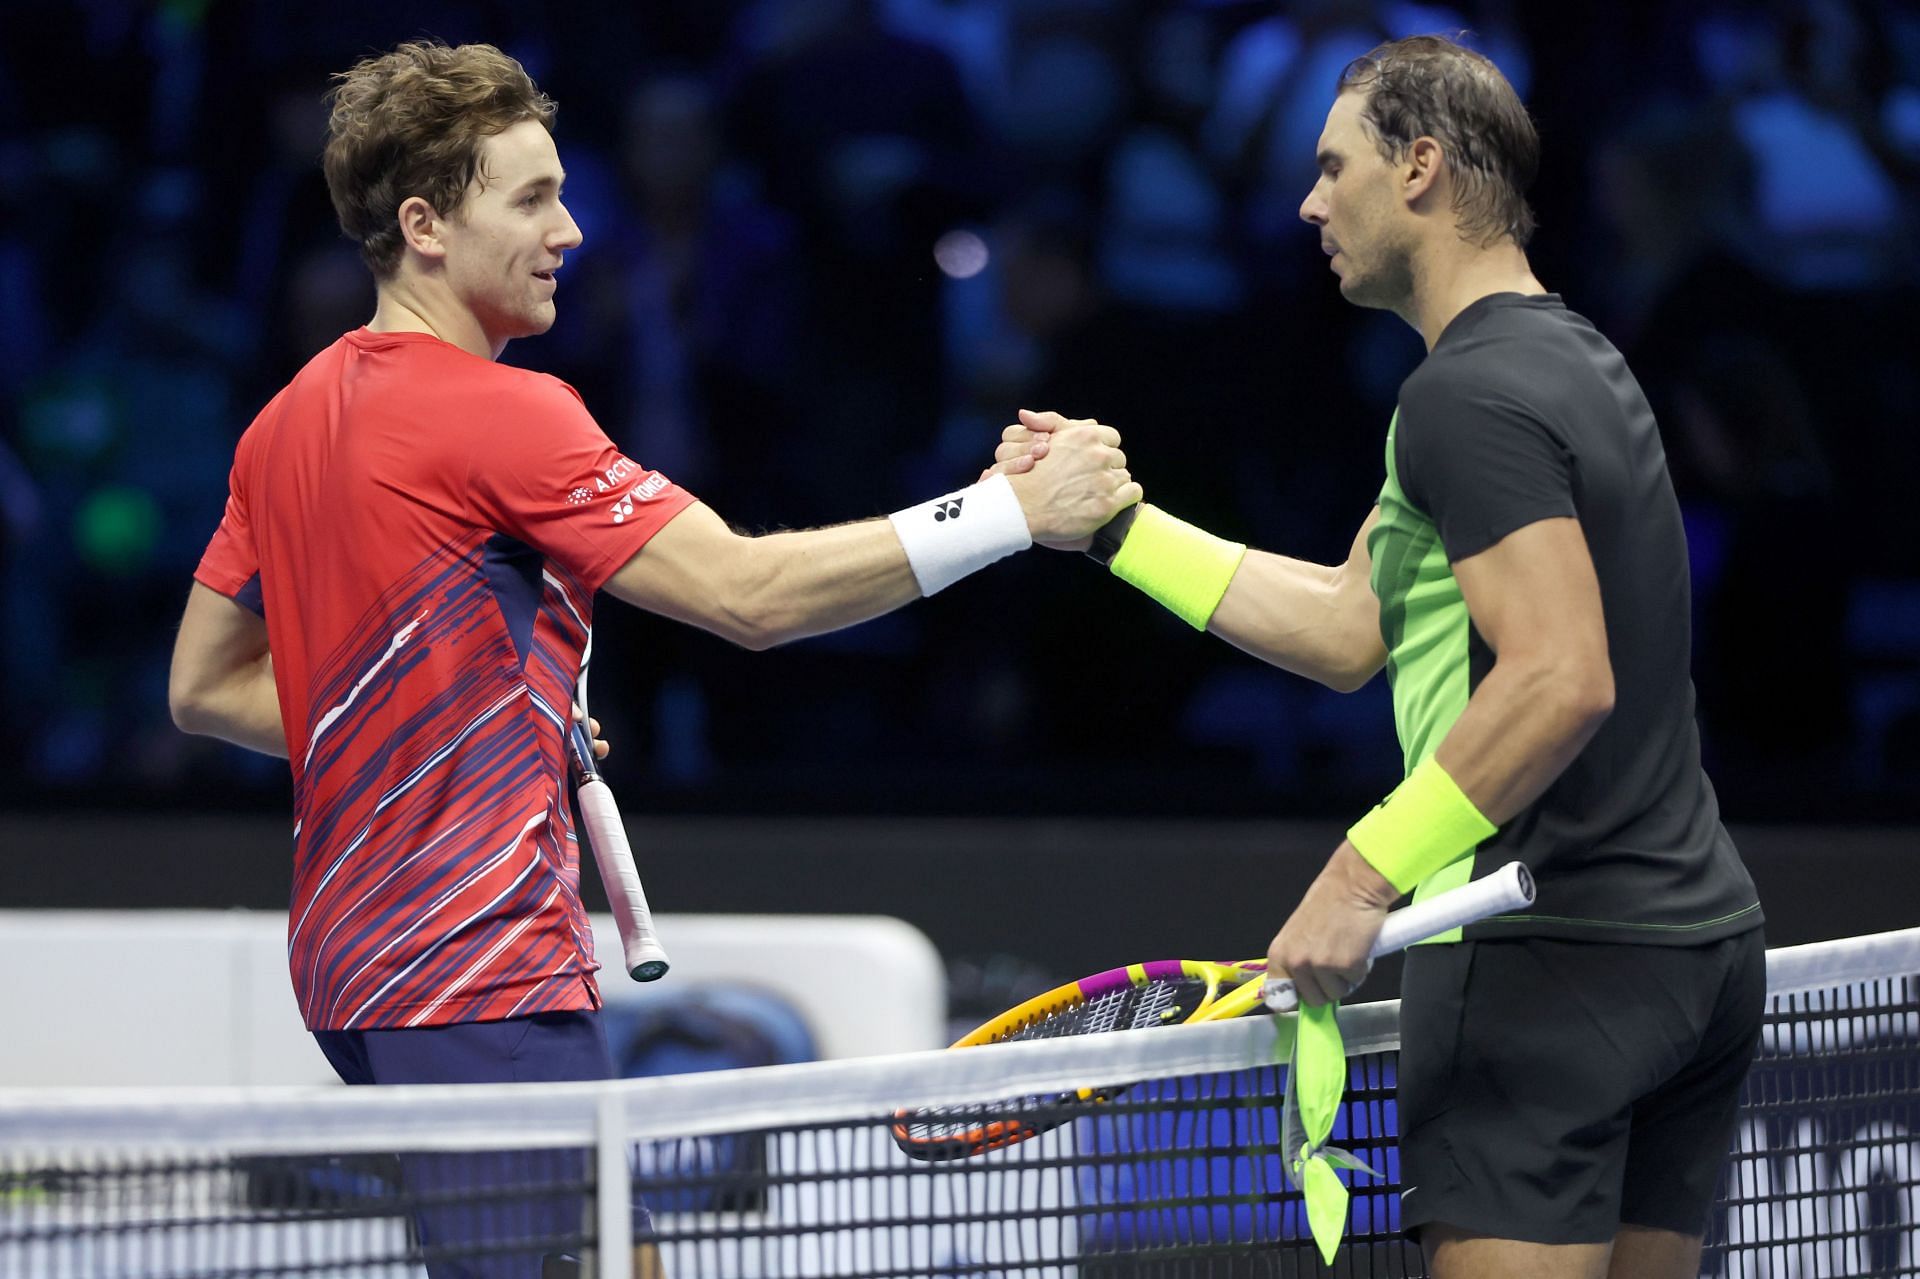 Casper Ruud (L) congratulates Rafael Nadal after their match at the 2022 ATP Finals